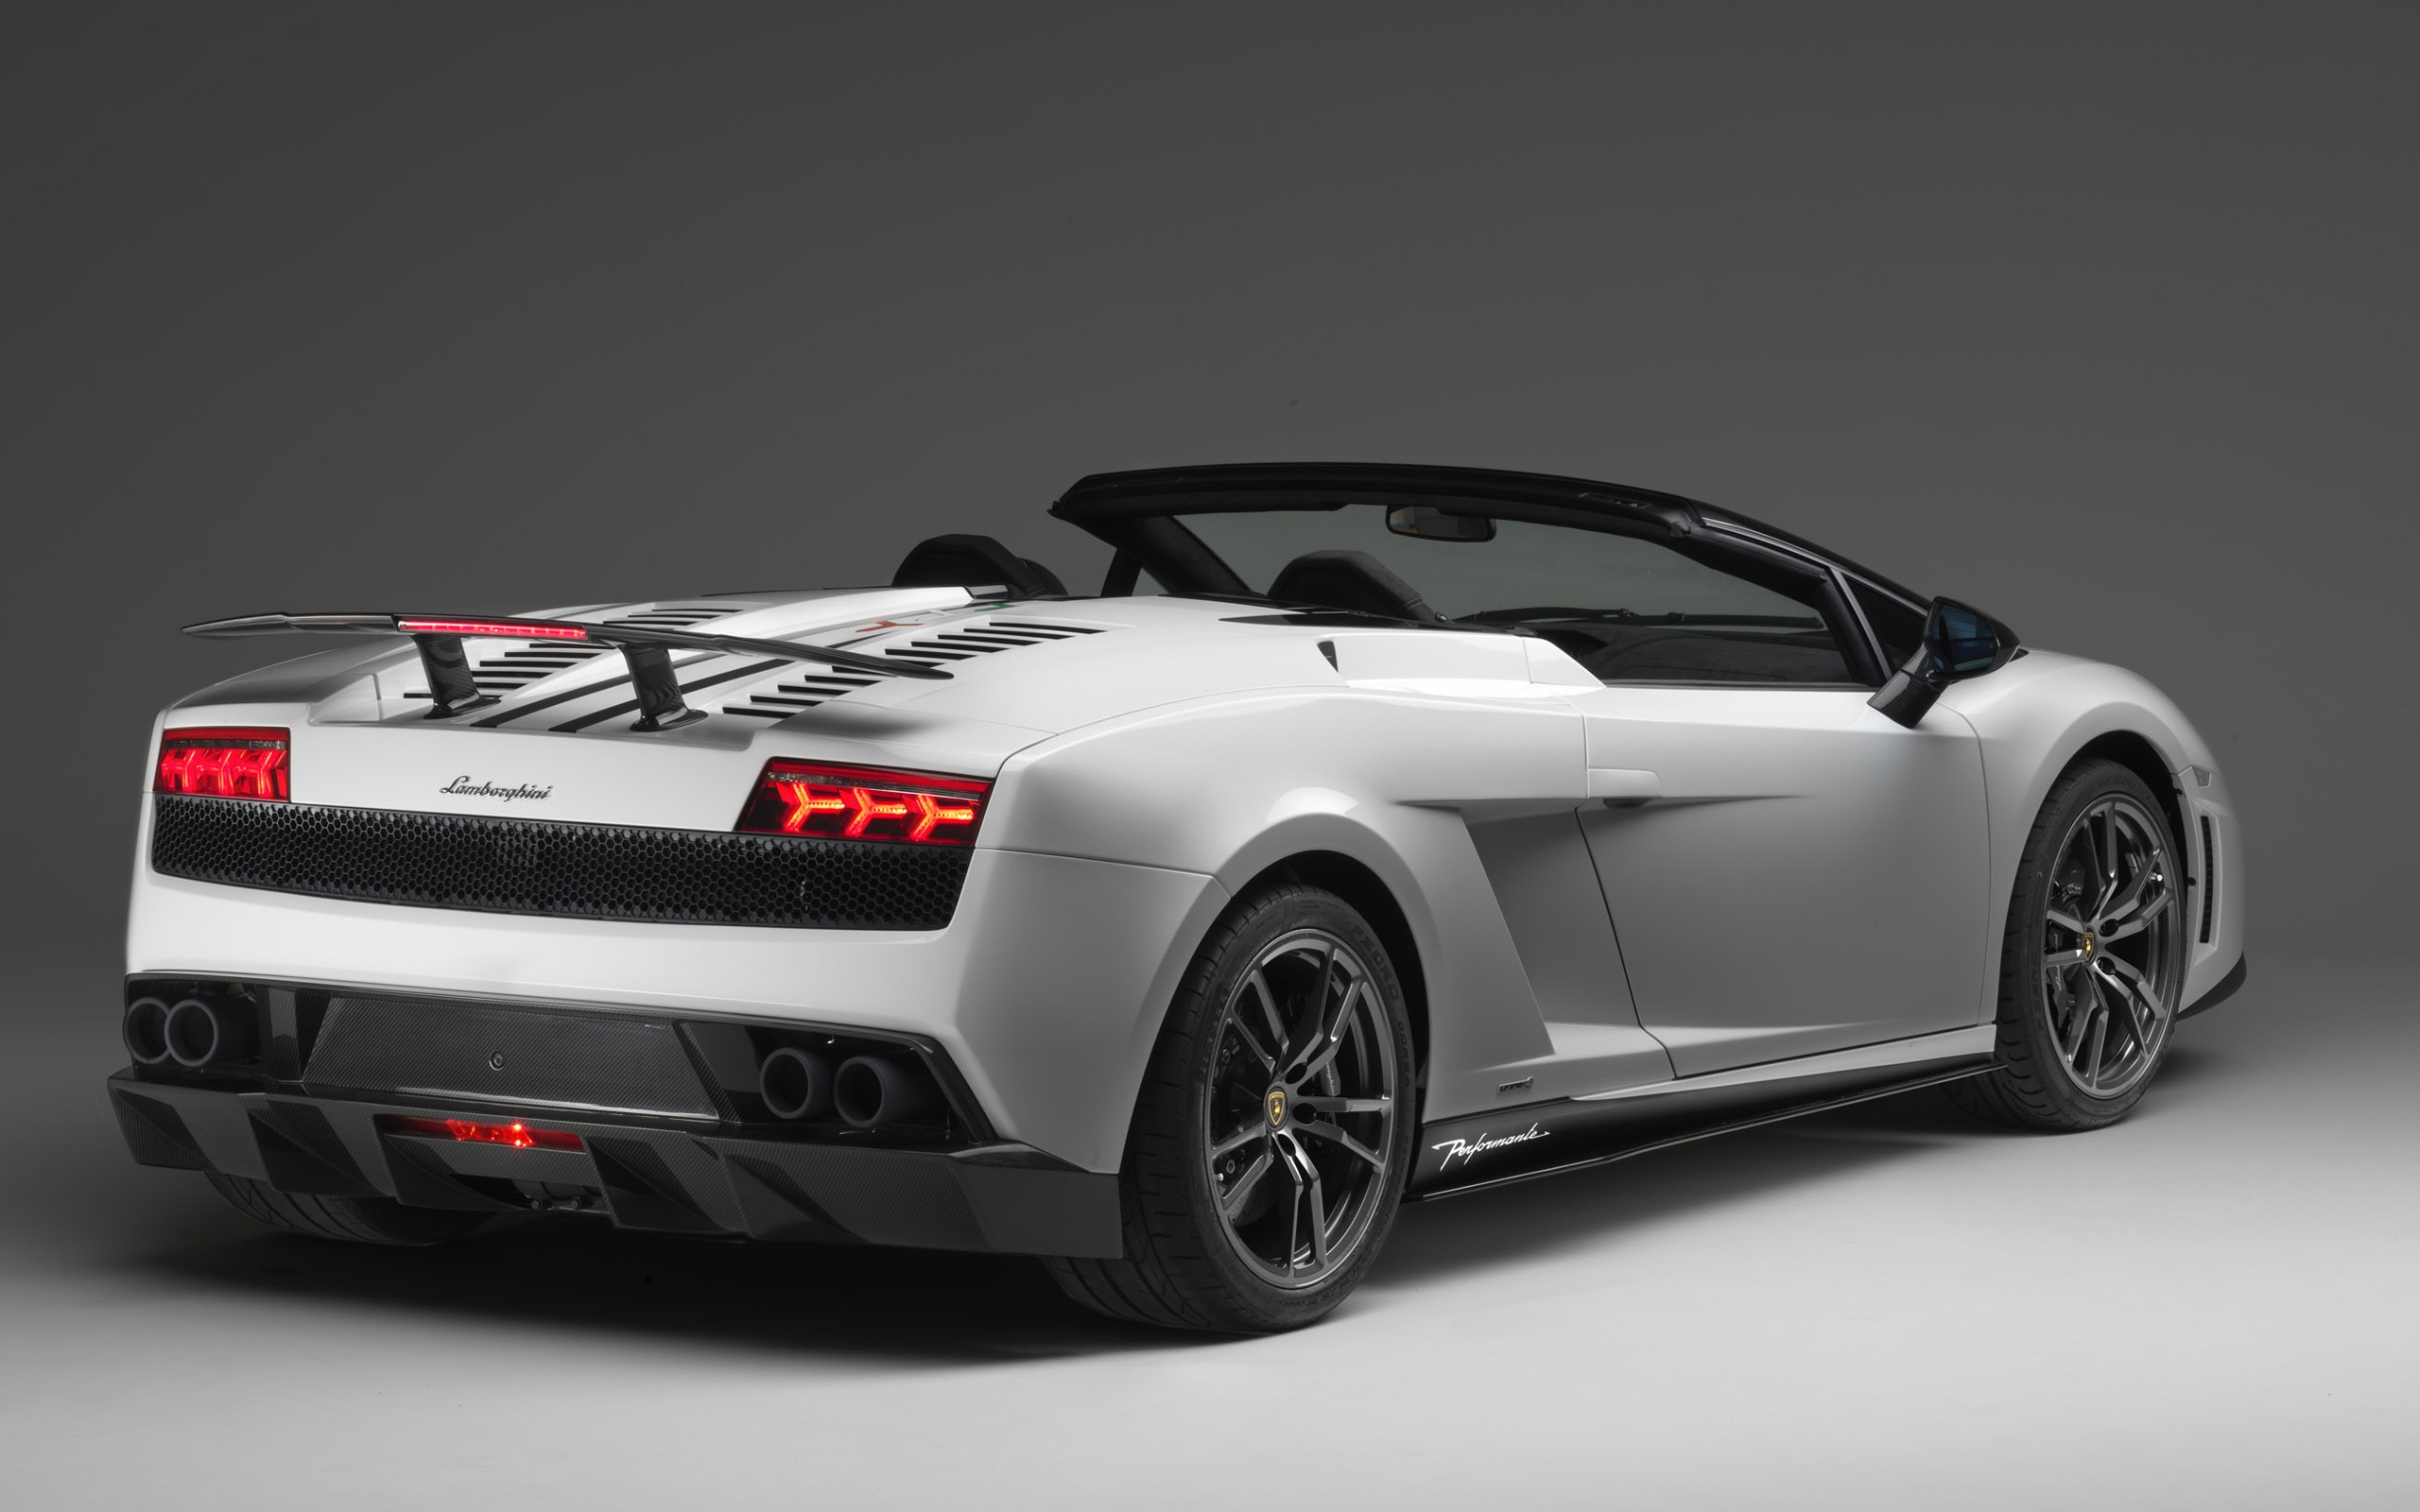 Lamborghini Gallardo LP 570 4 Spyder for 2560 x 1600 widescreen resolution